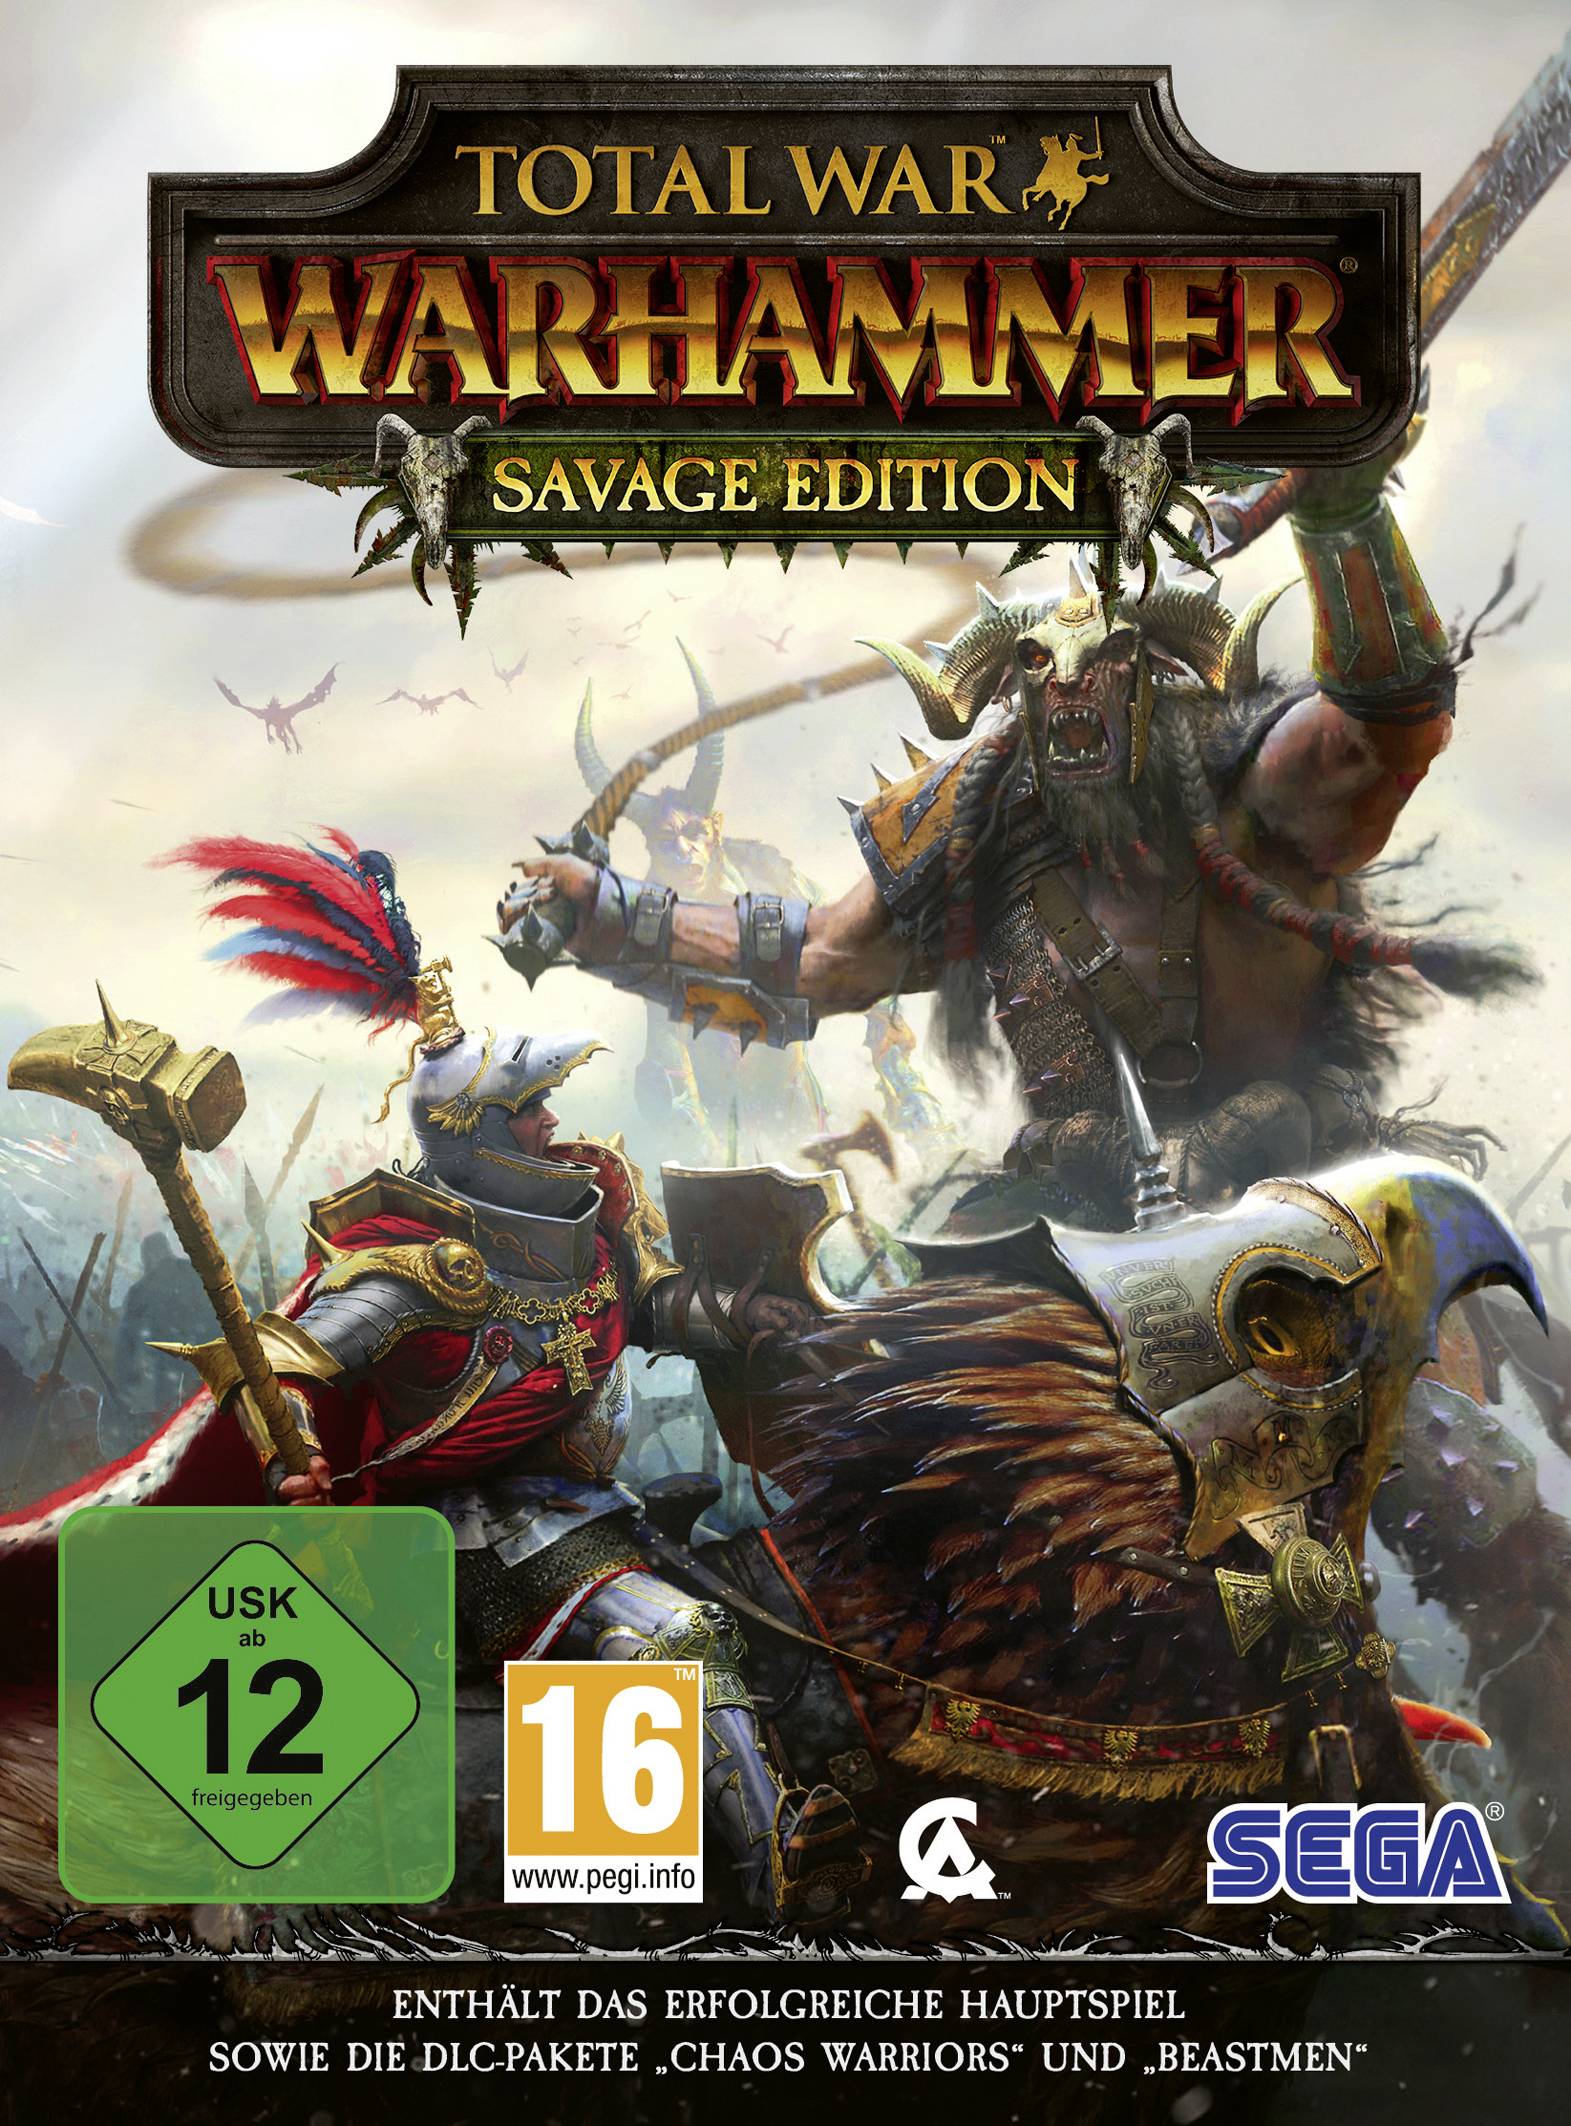 SEGA Total War: Warhammer - Savage Edition PC USK: 12